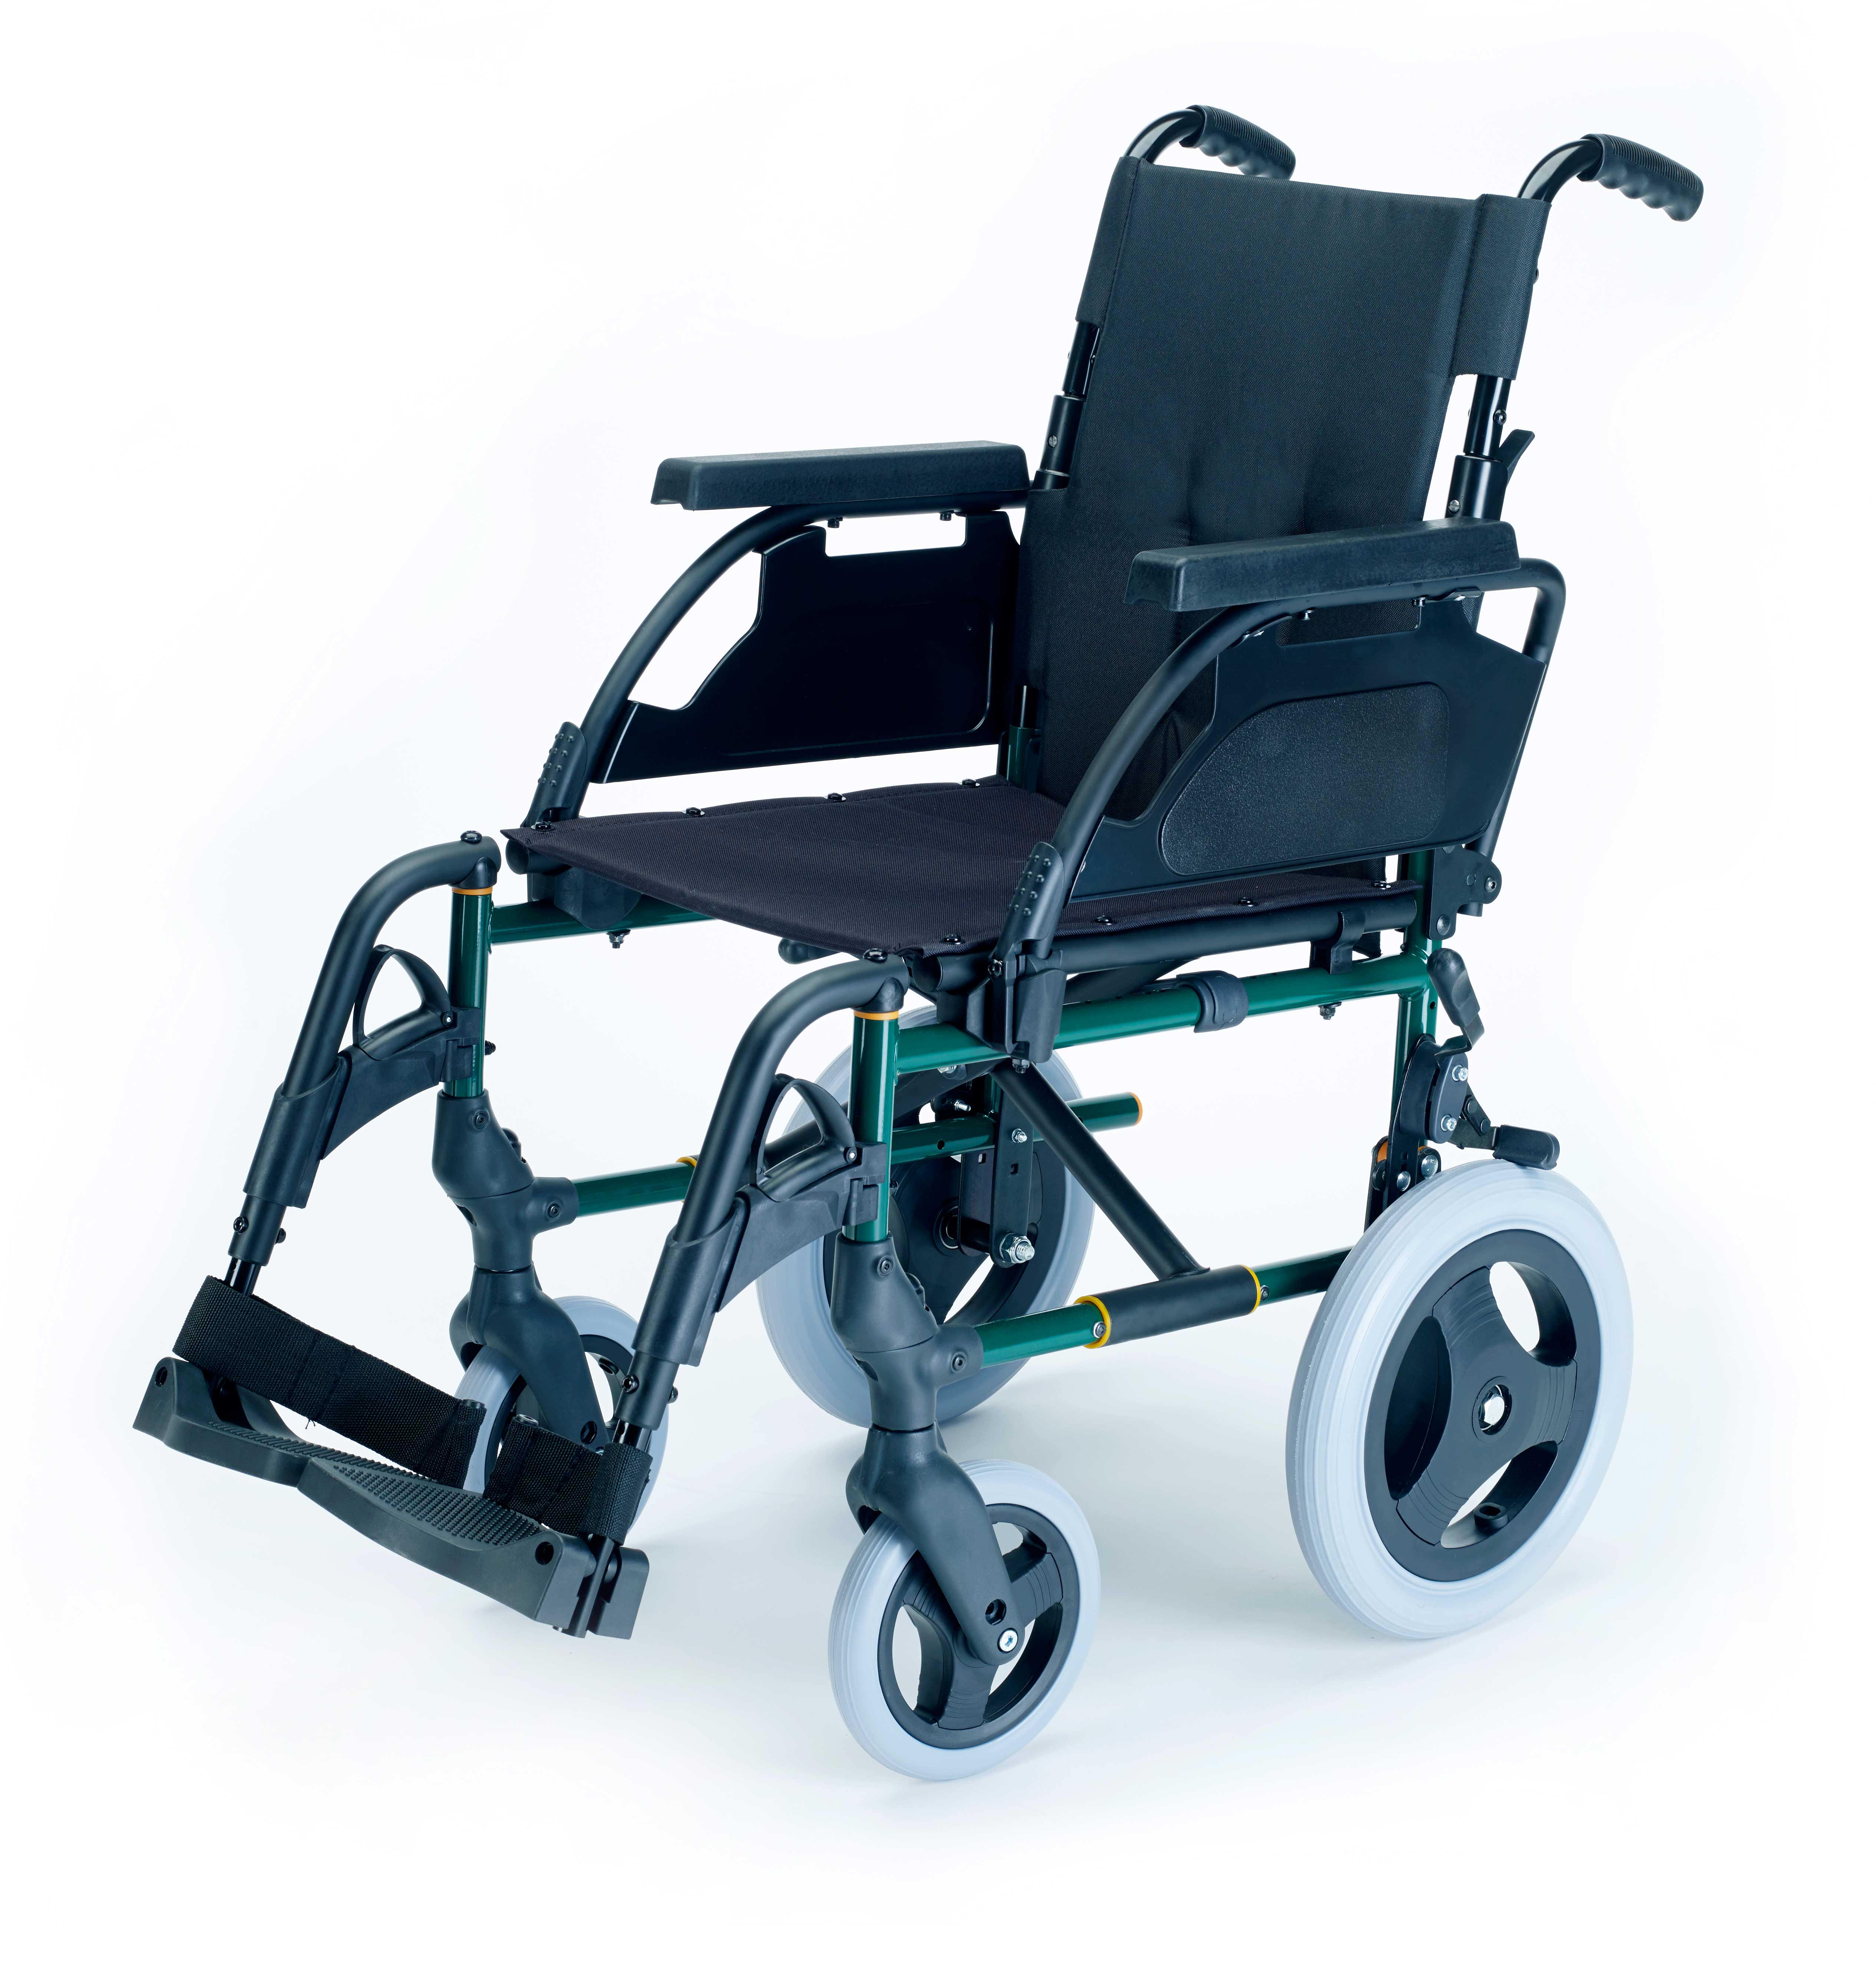 Коляски инвалидные прогулочные цена. Кресло-коляска Breezy 710 Style p. Breezy Premium ly-250 (250-PR/49), ширина сиденья 49 см. Breezy 300 инвалидная коляска. Инвалидная кресло-коляска c52 комфорт.